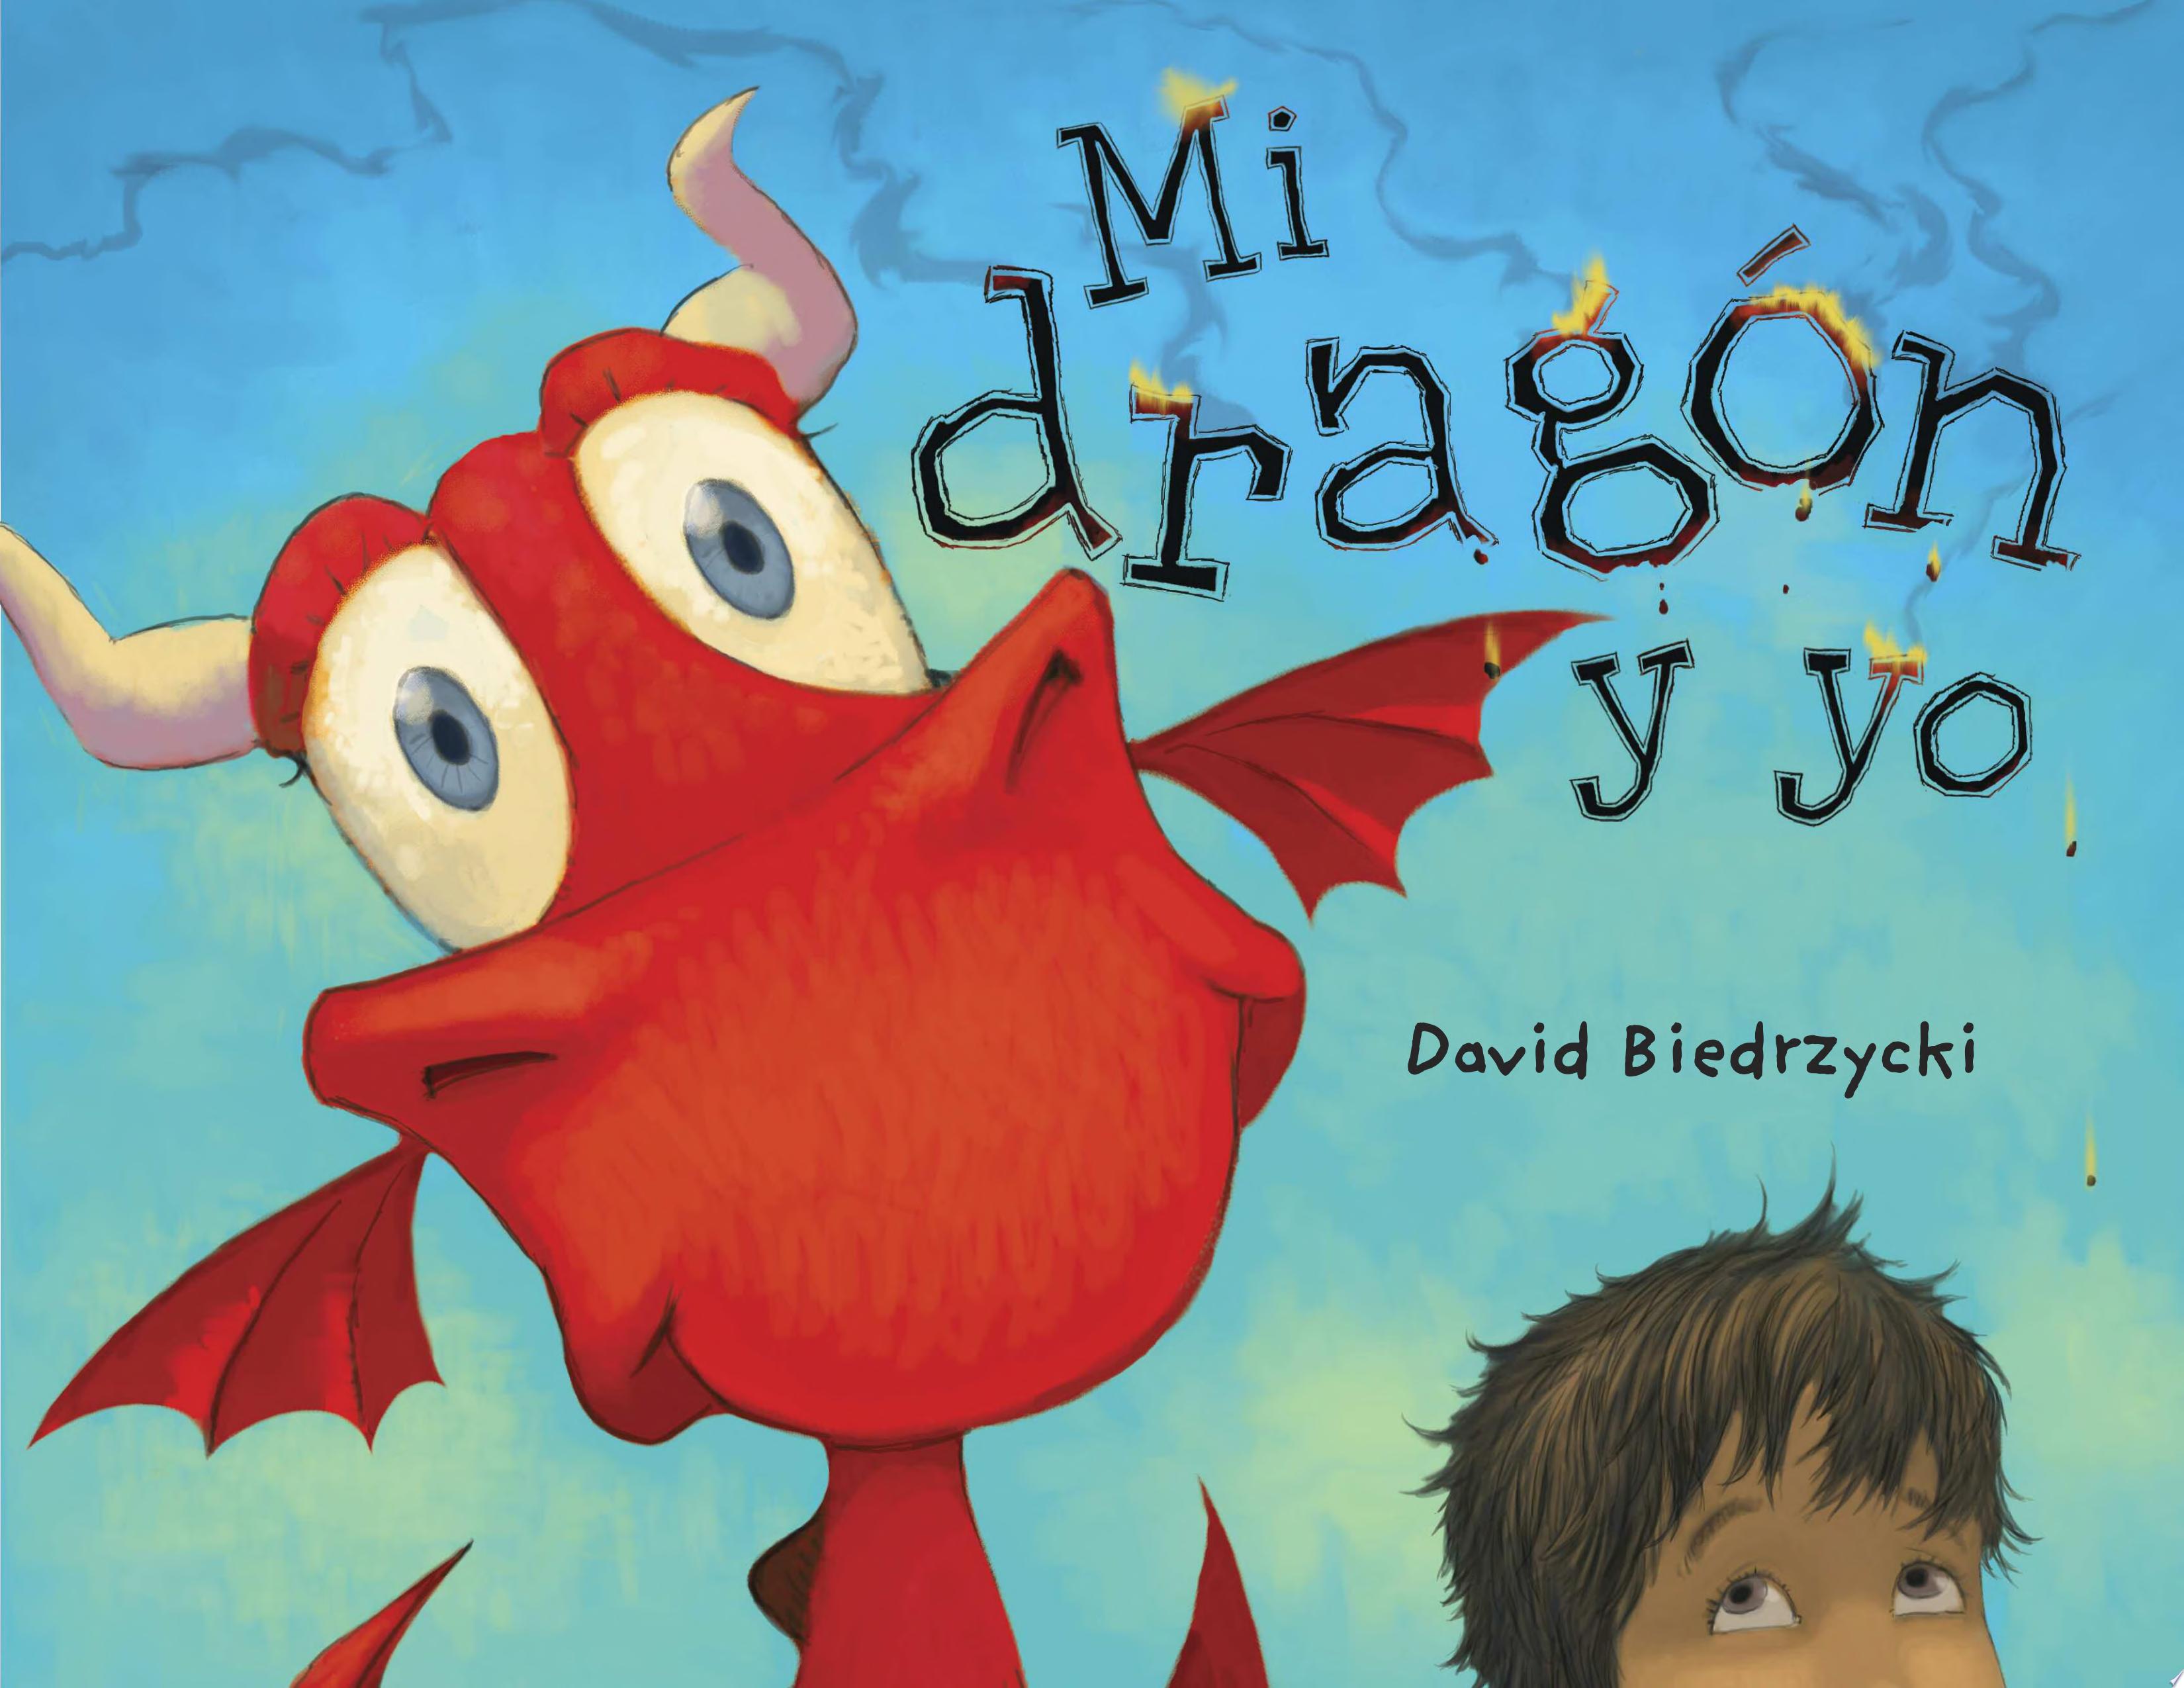 Image for "Mi dragón y yo"